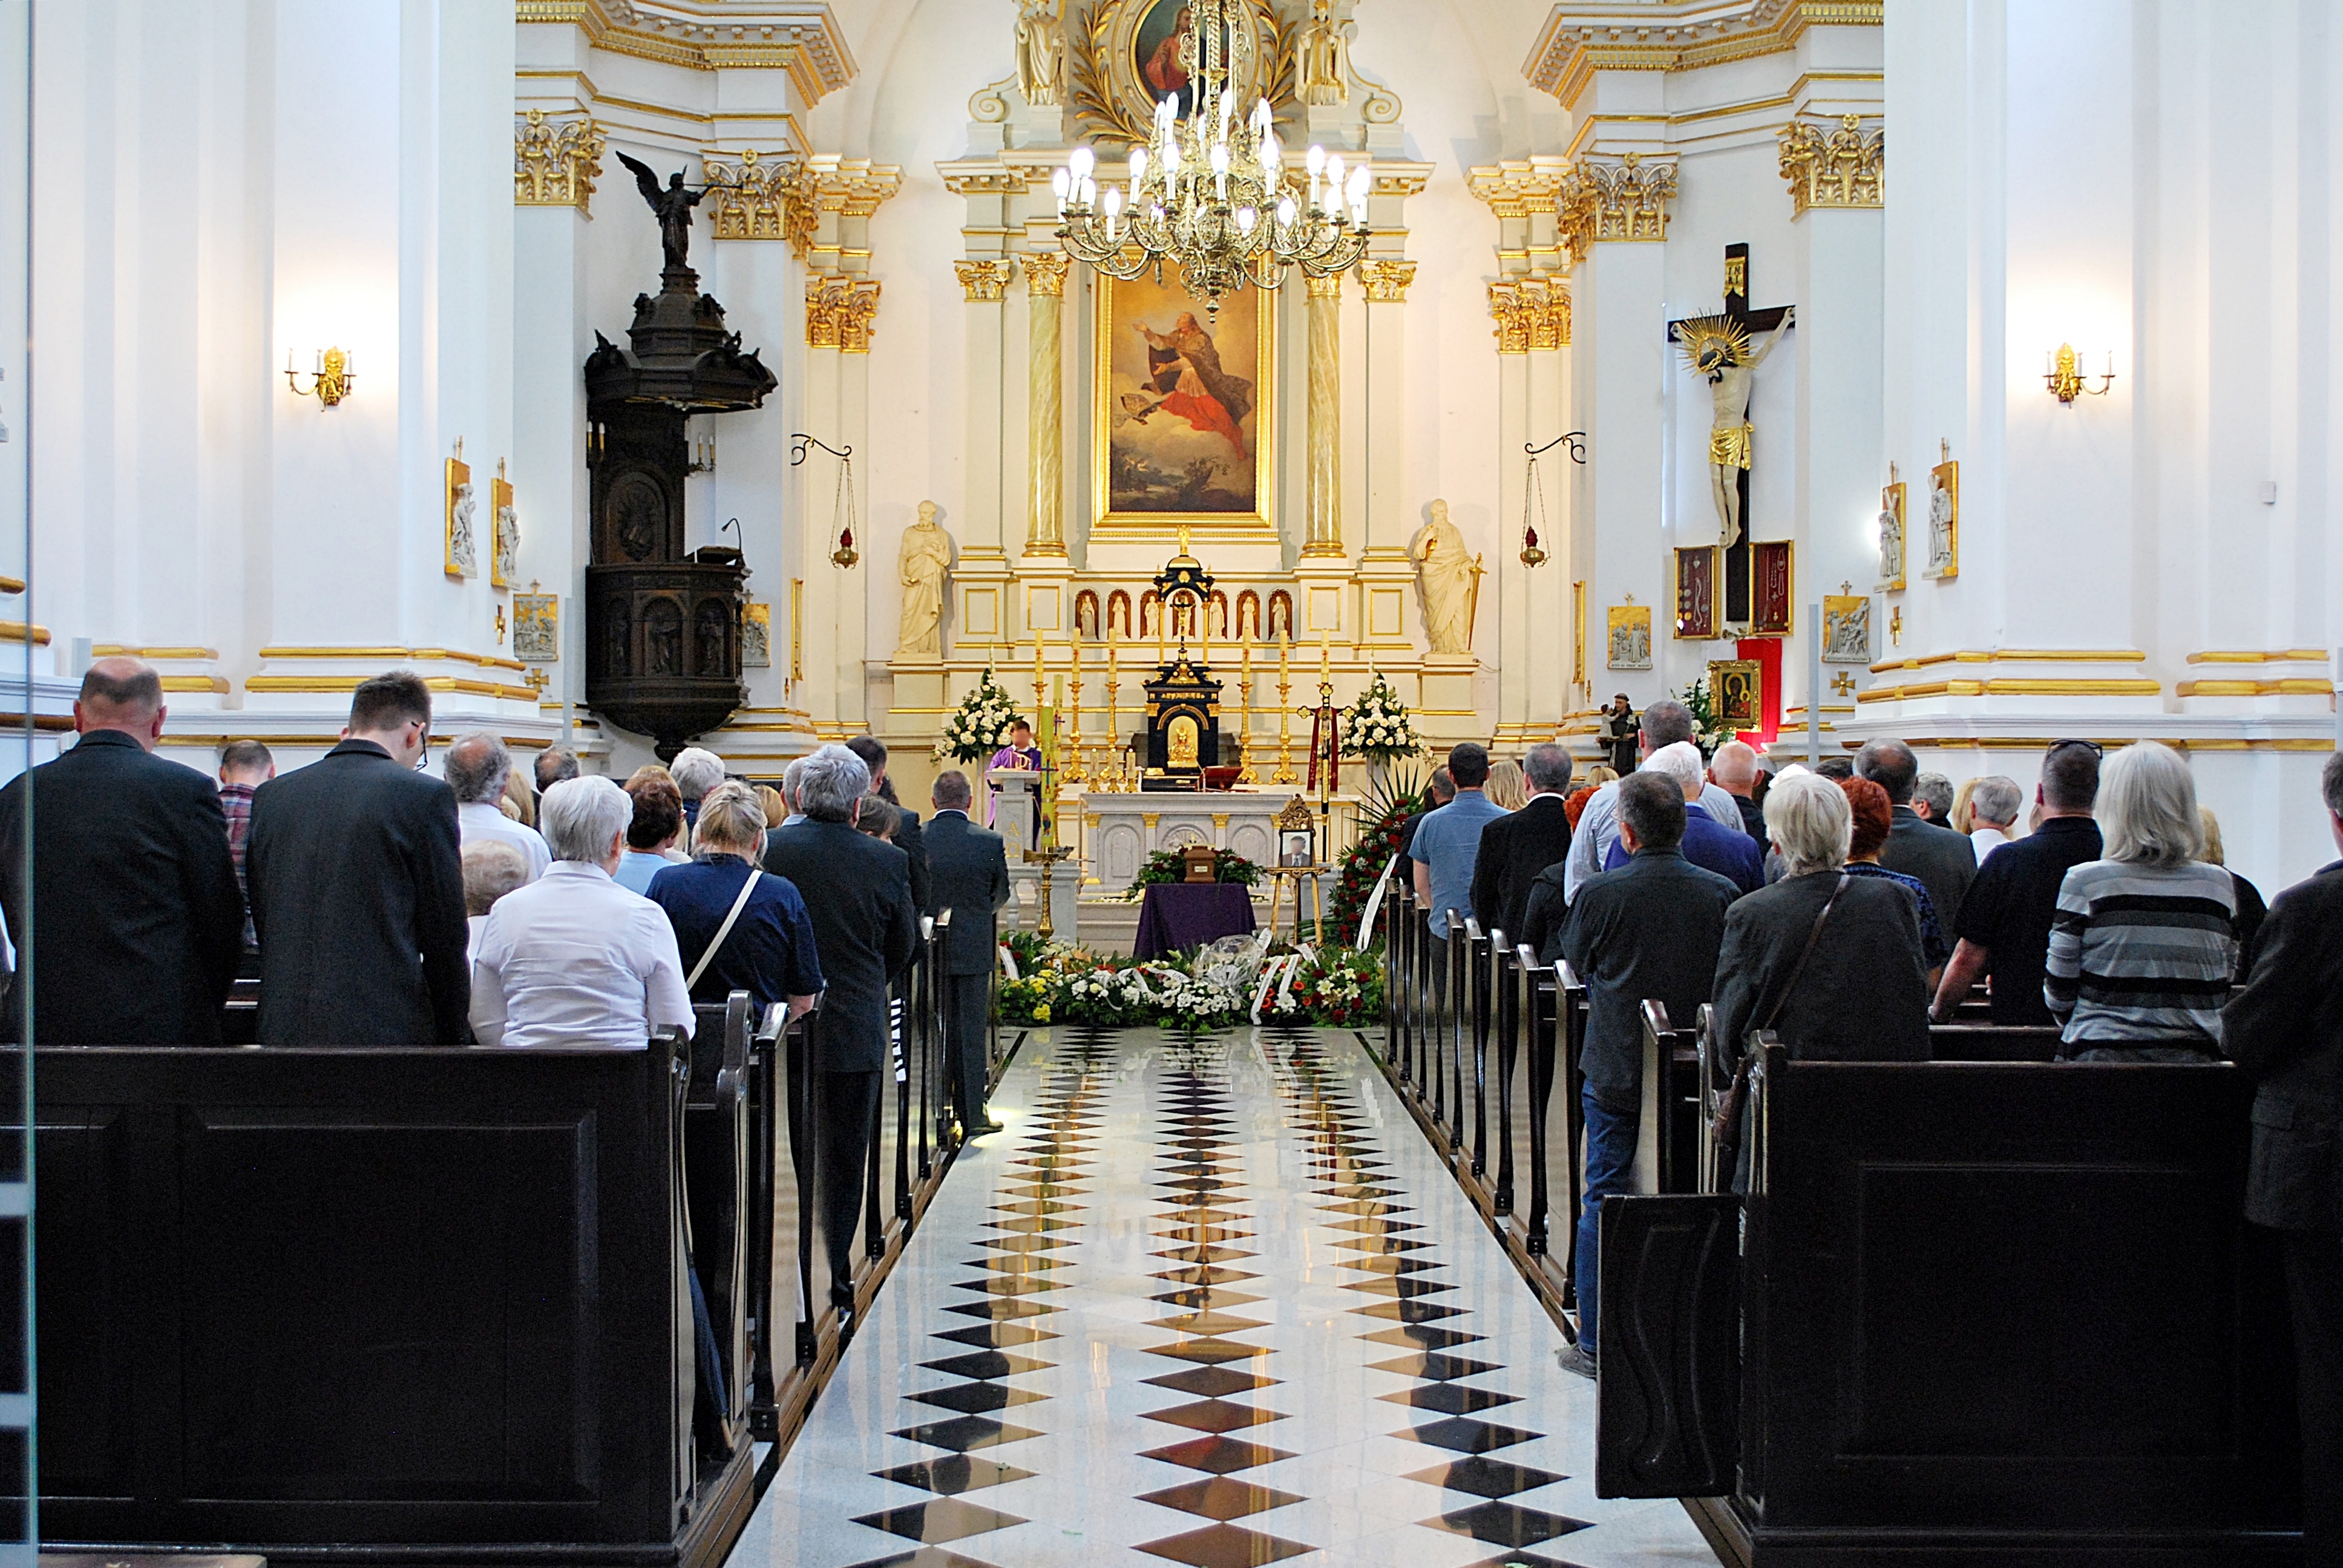 Une cérémonie funéraire | Source : Shutterstock